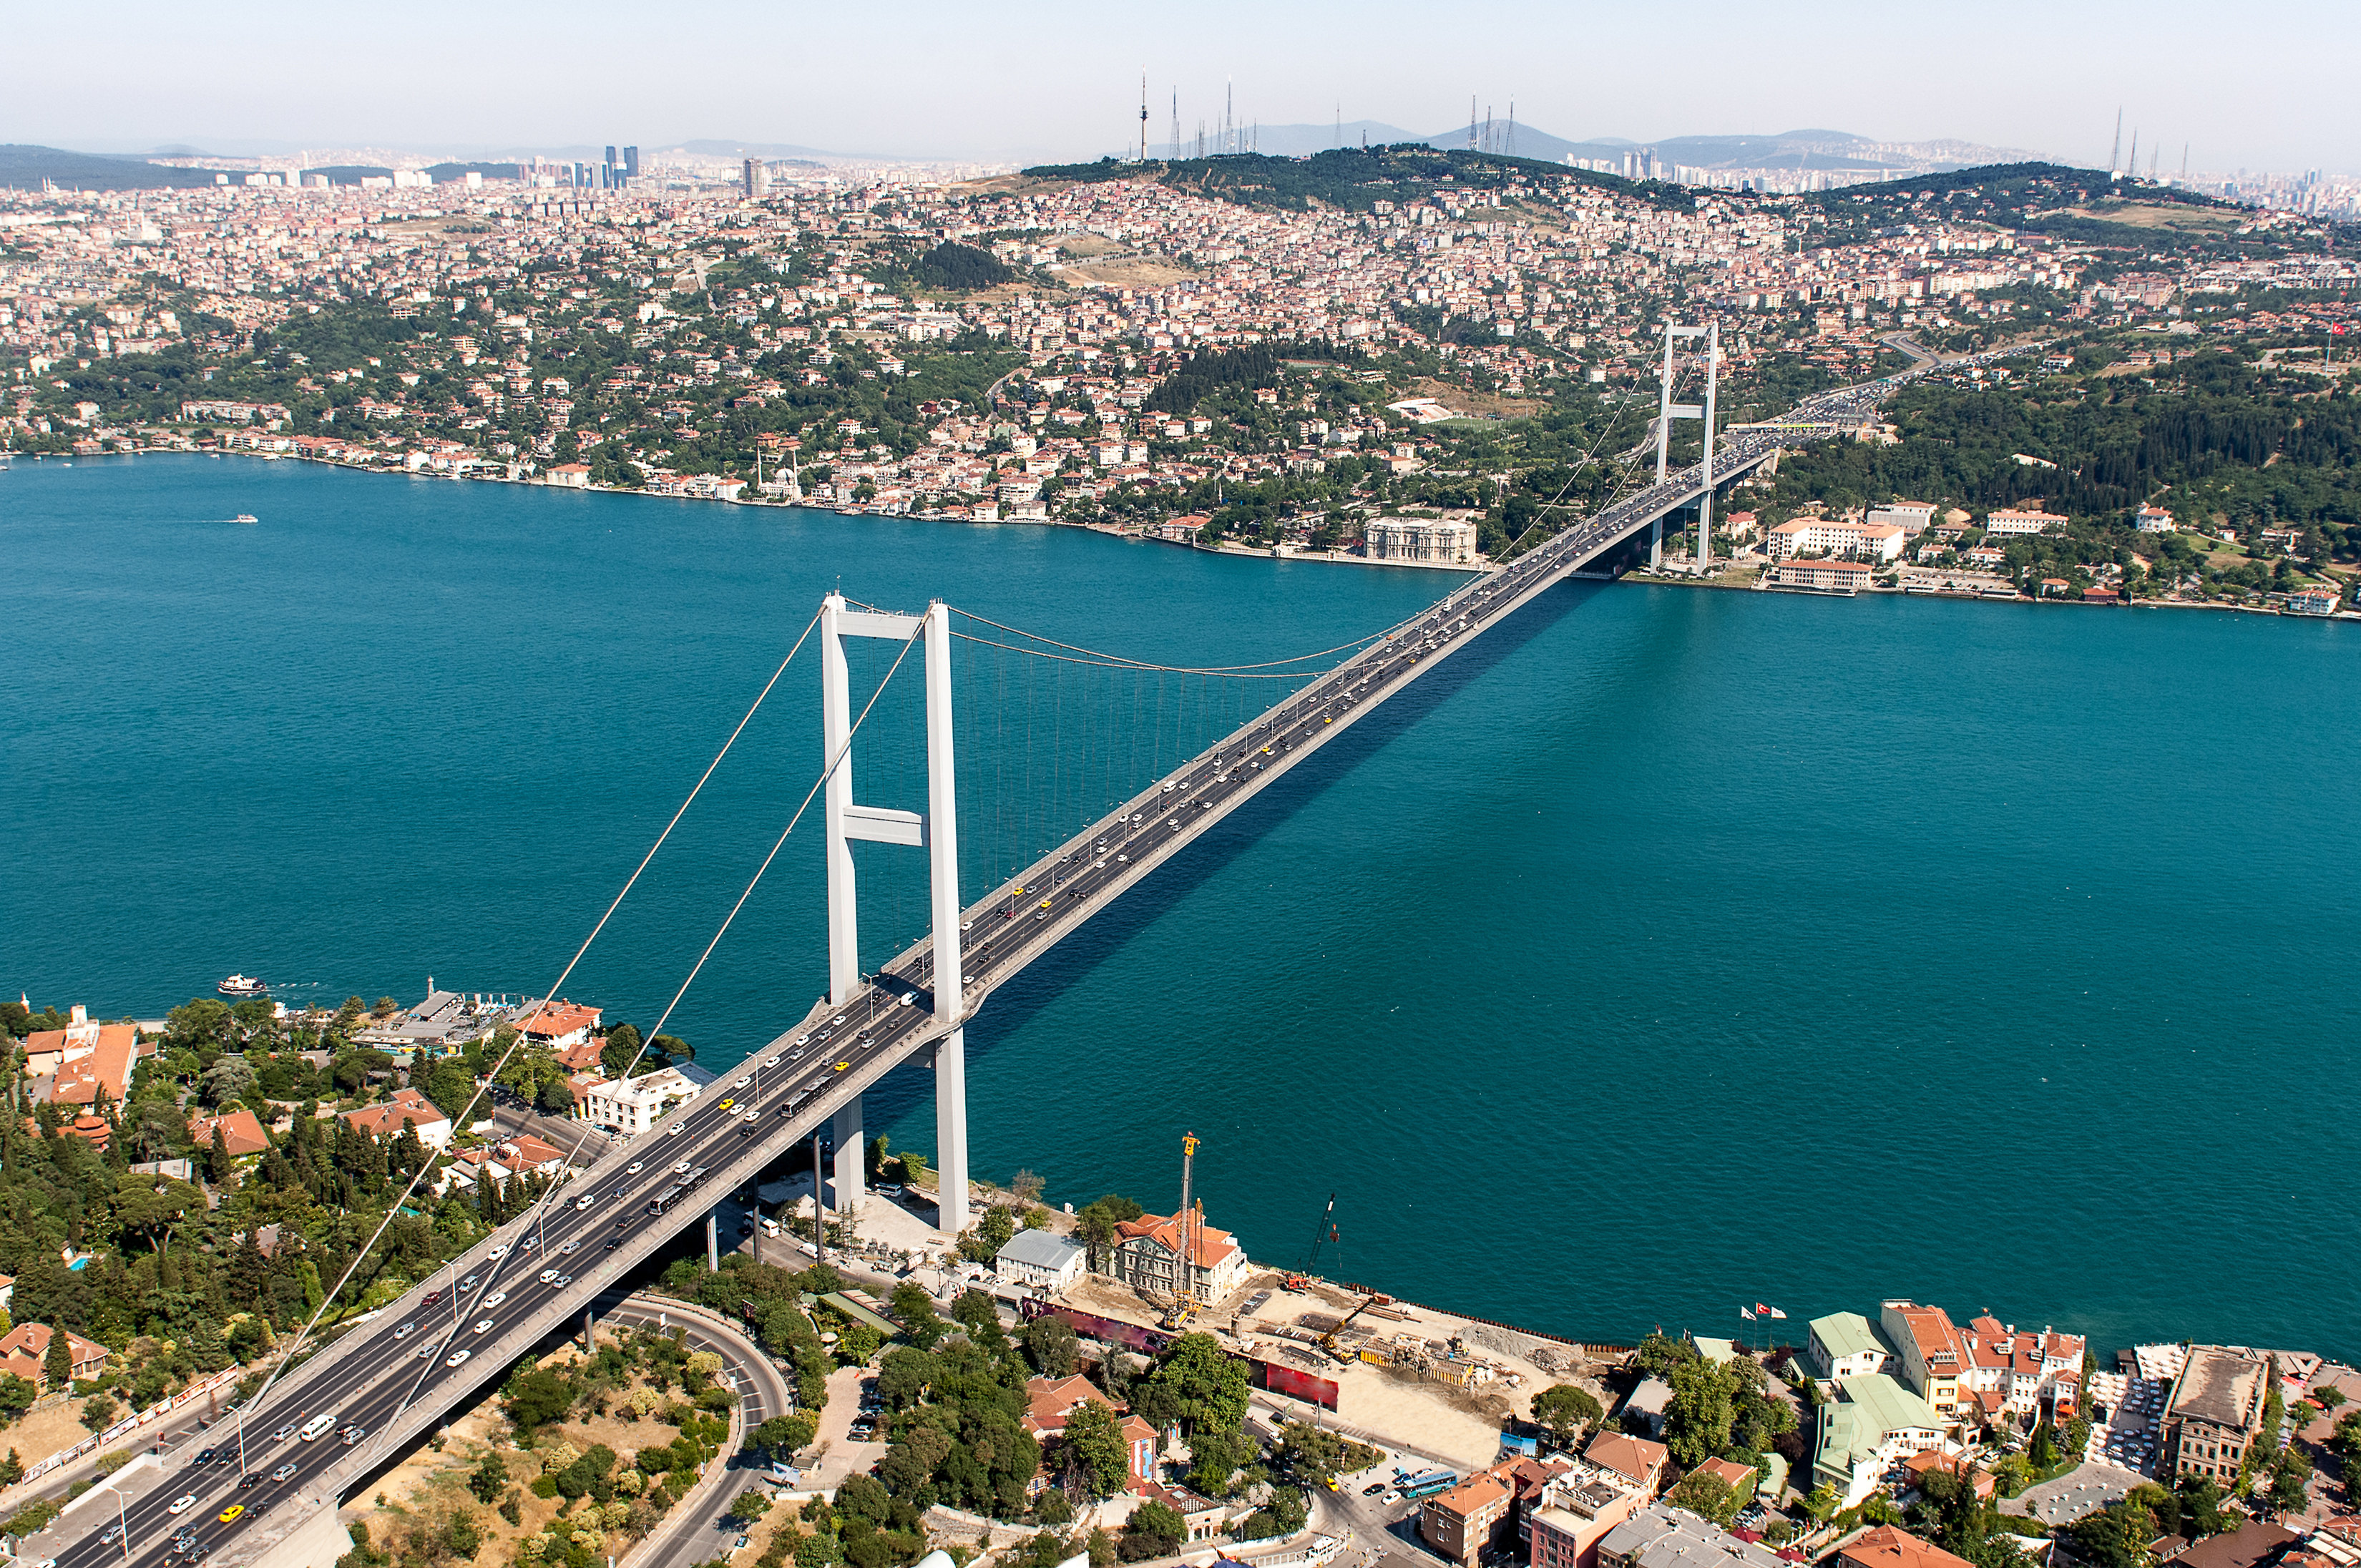 【携程攻略】伊斯坦布尔附近景点,周边景区推荐/攻略